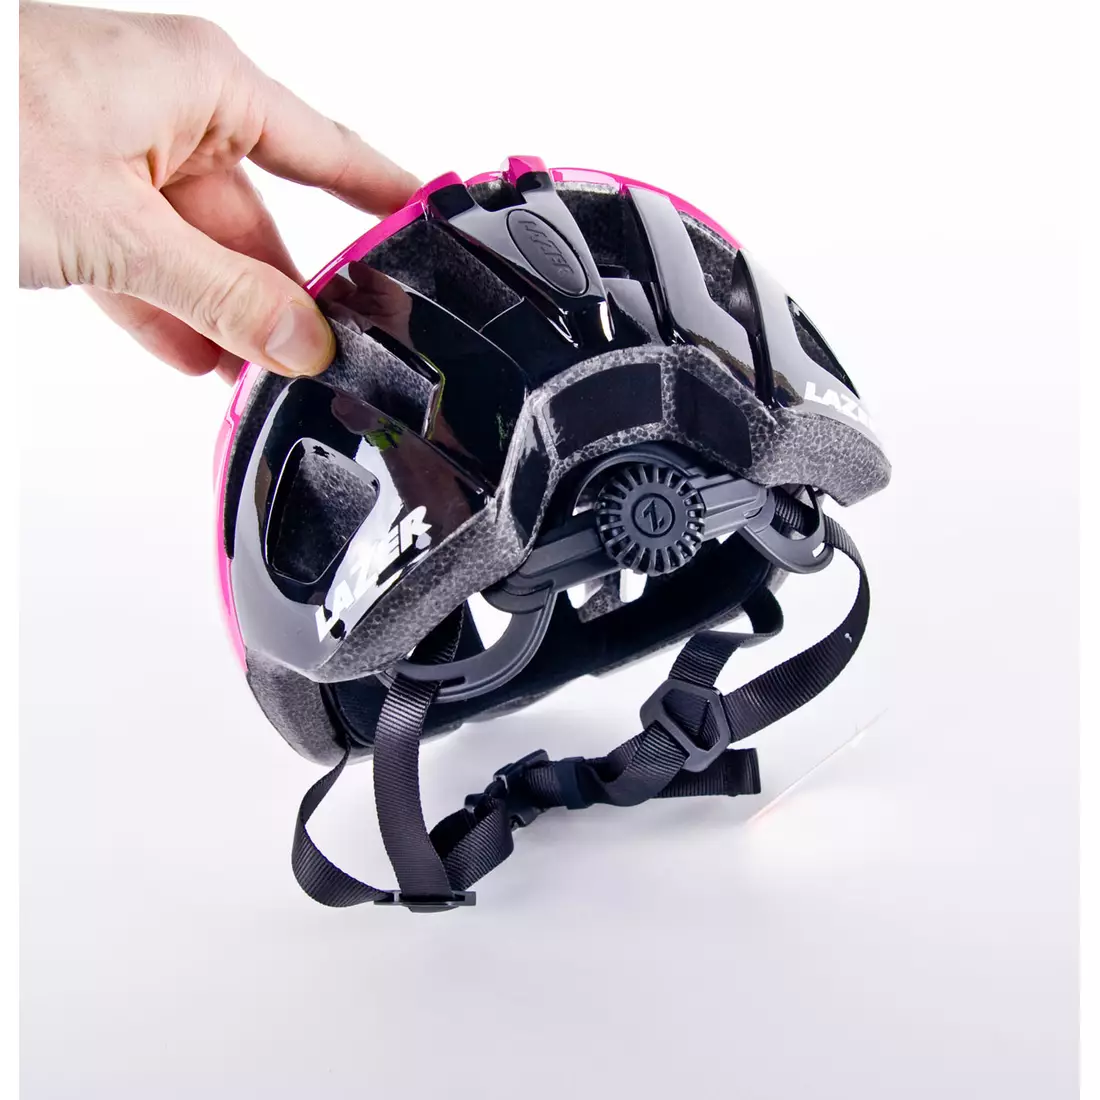 Silniční cyklistická helma LAZER TONIC TS+, růžový lesk